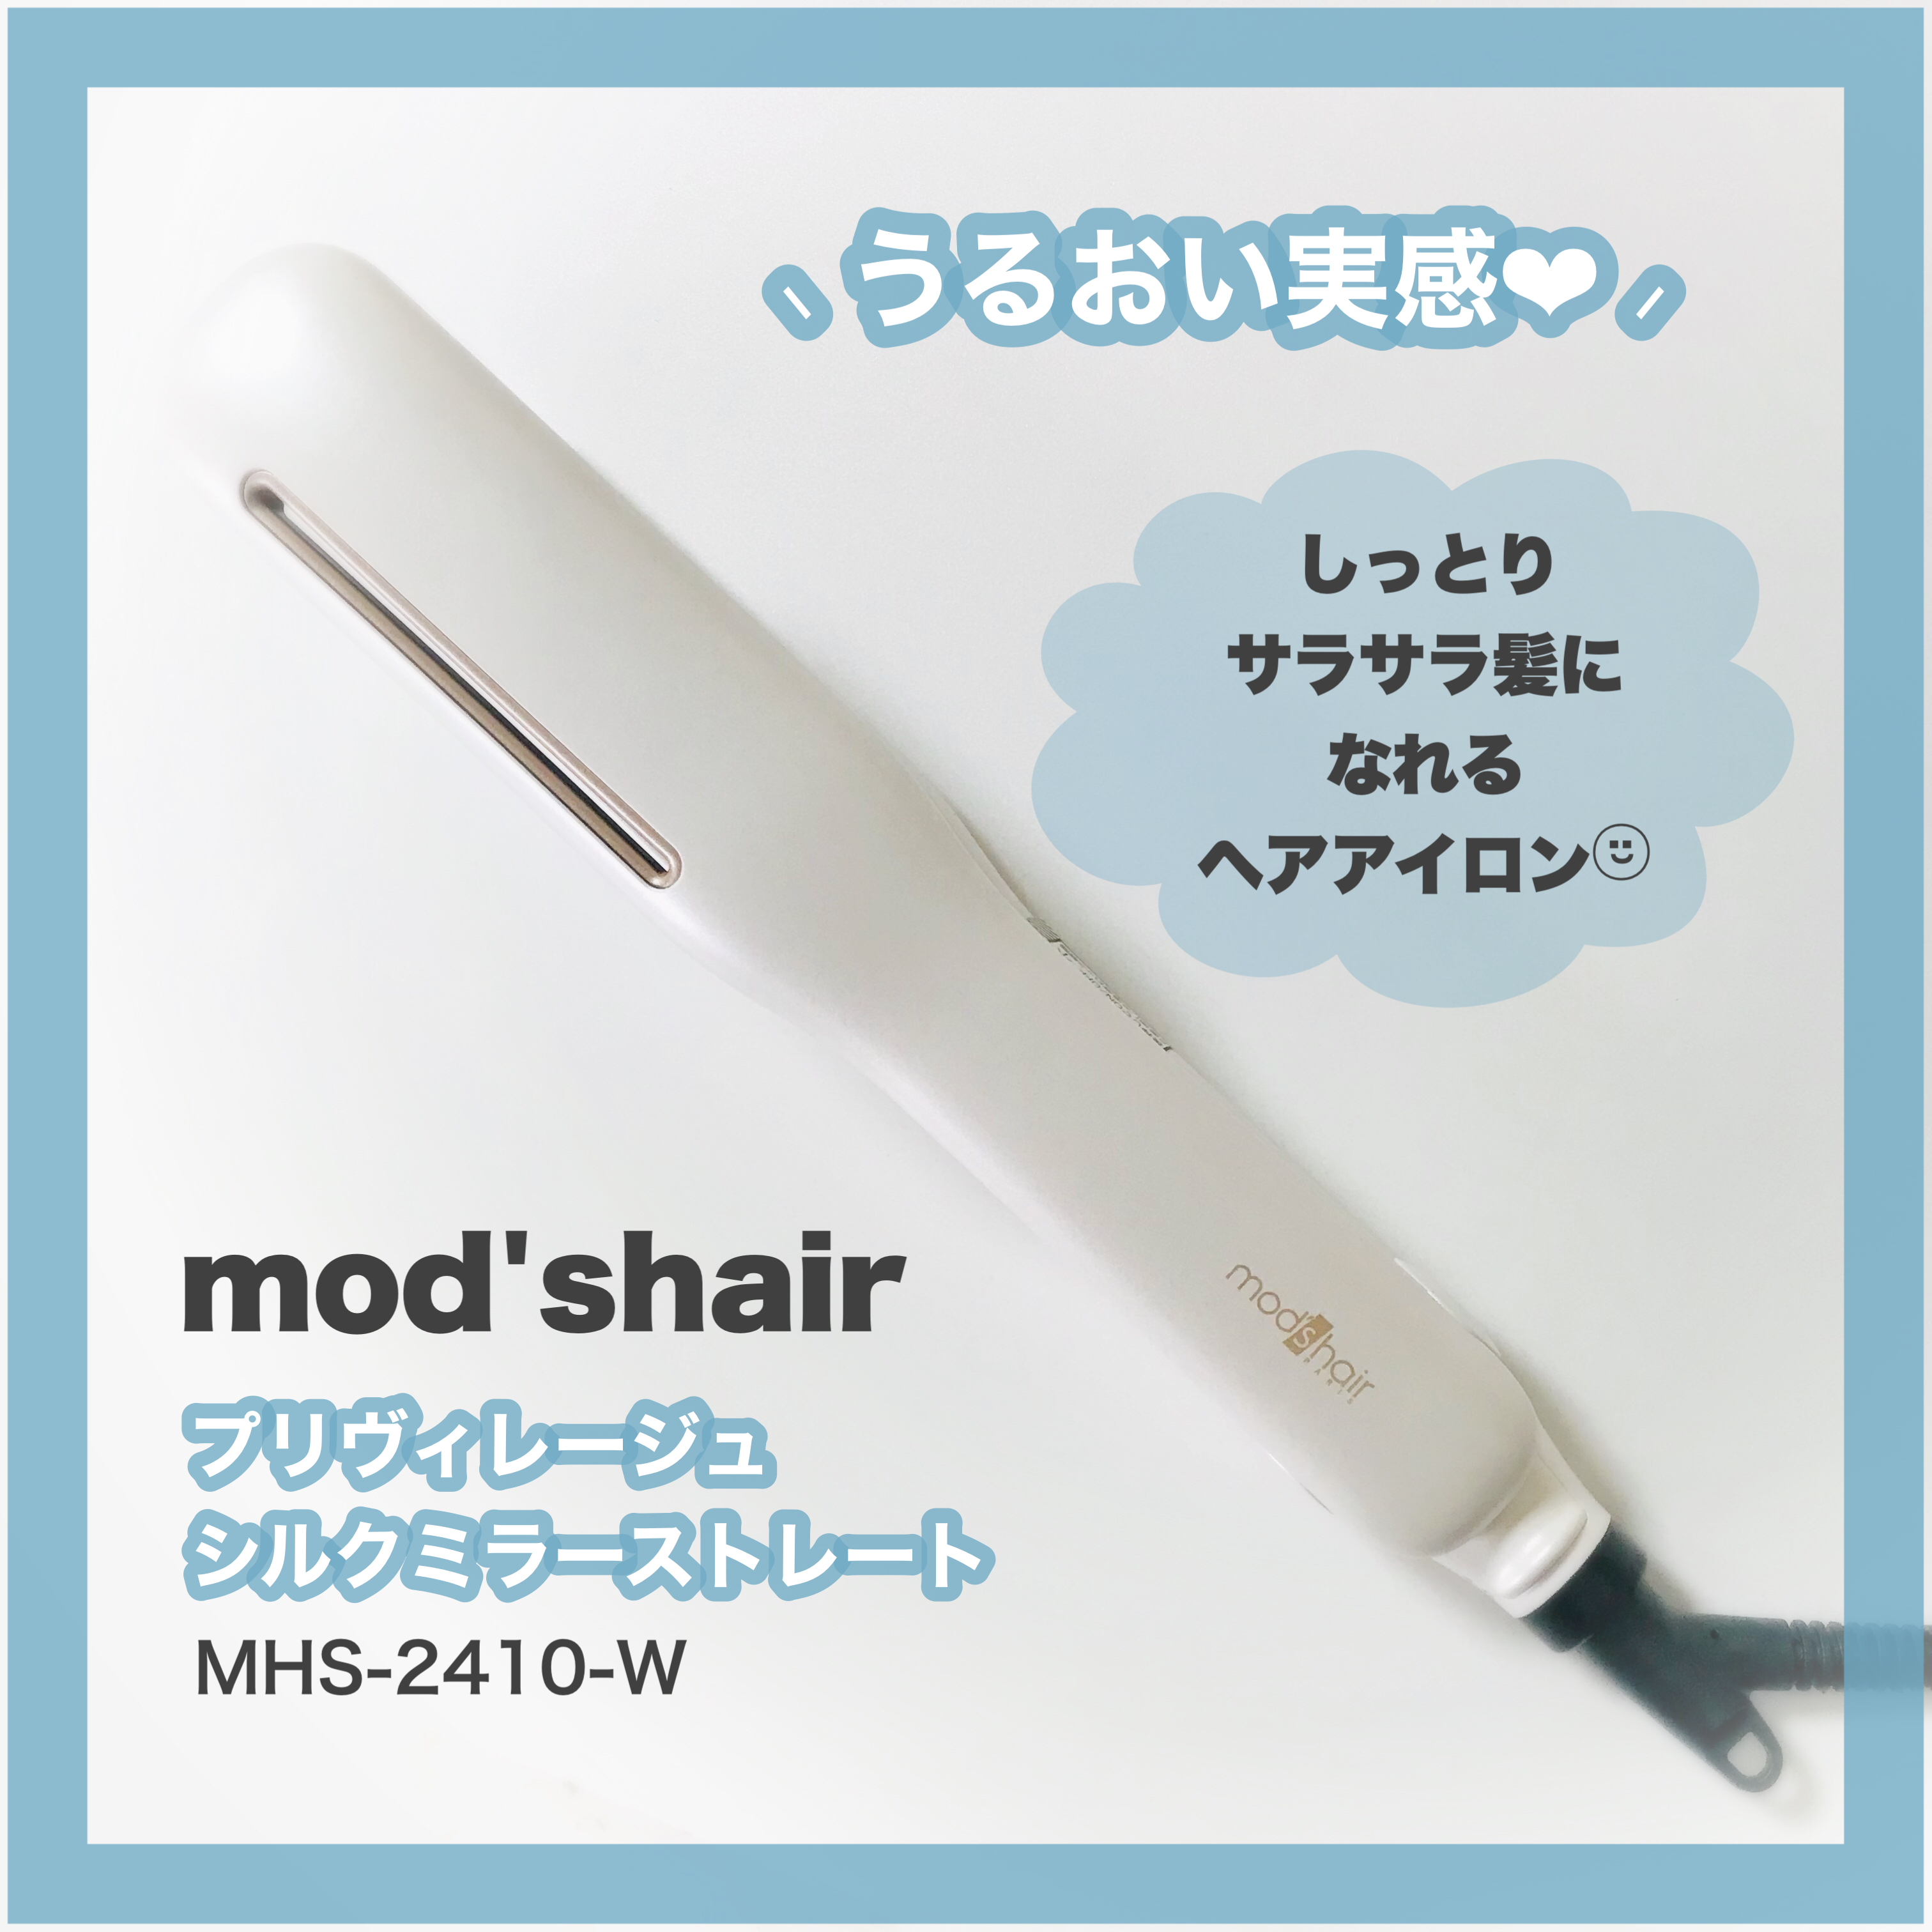 mod’s hair(モッズ・ヘア) プリヴィレージュ シルクミラーストレート MHS-2410の良い点・メリットに関するありすさんの口コミ画像1